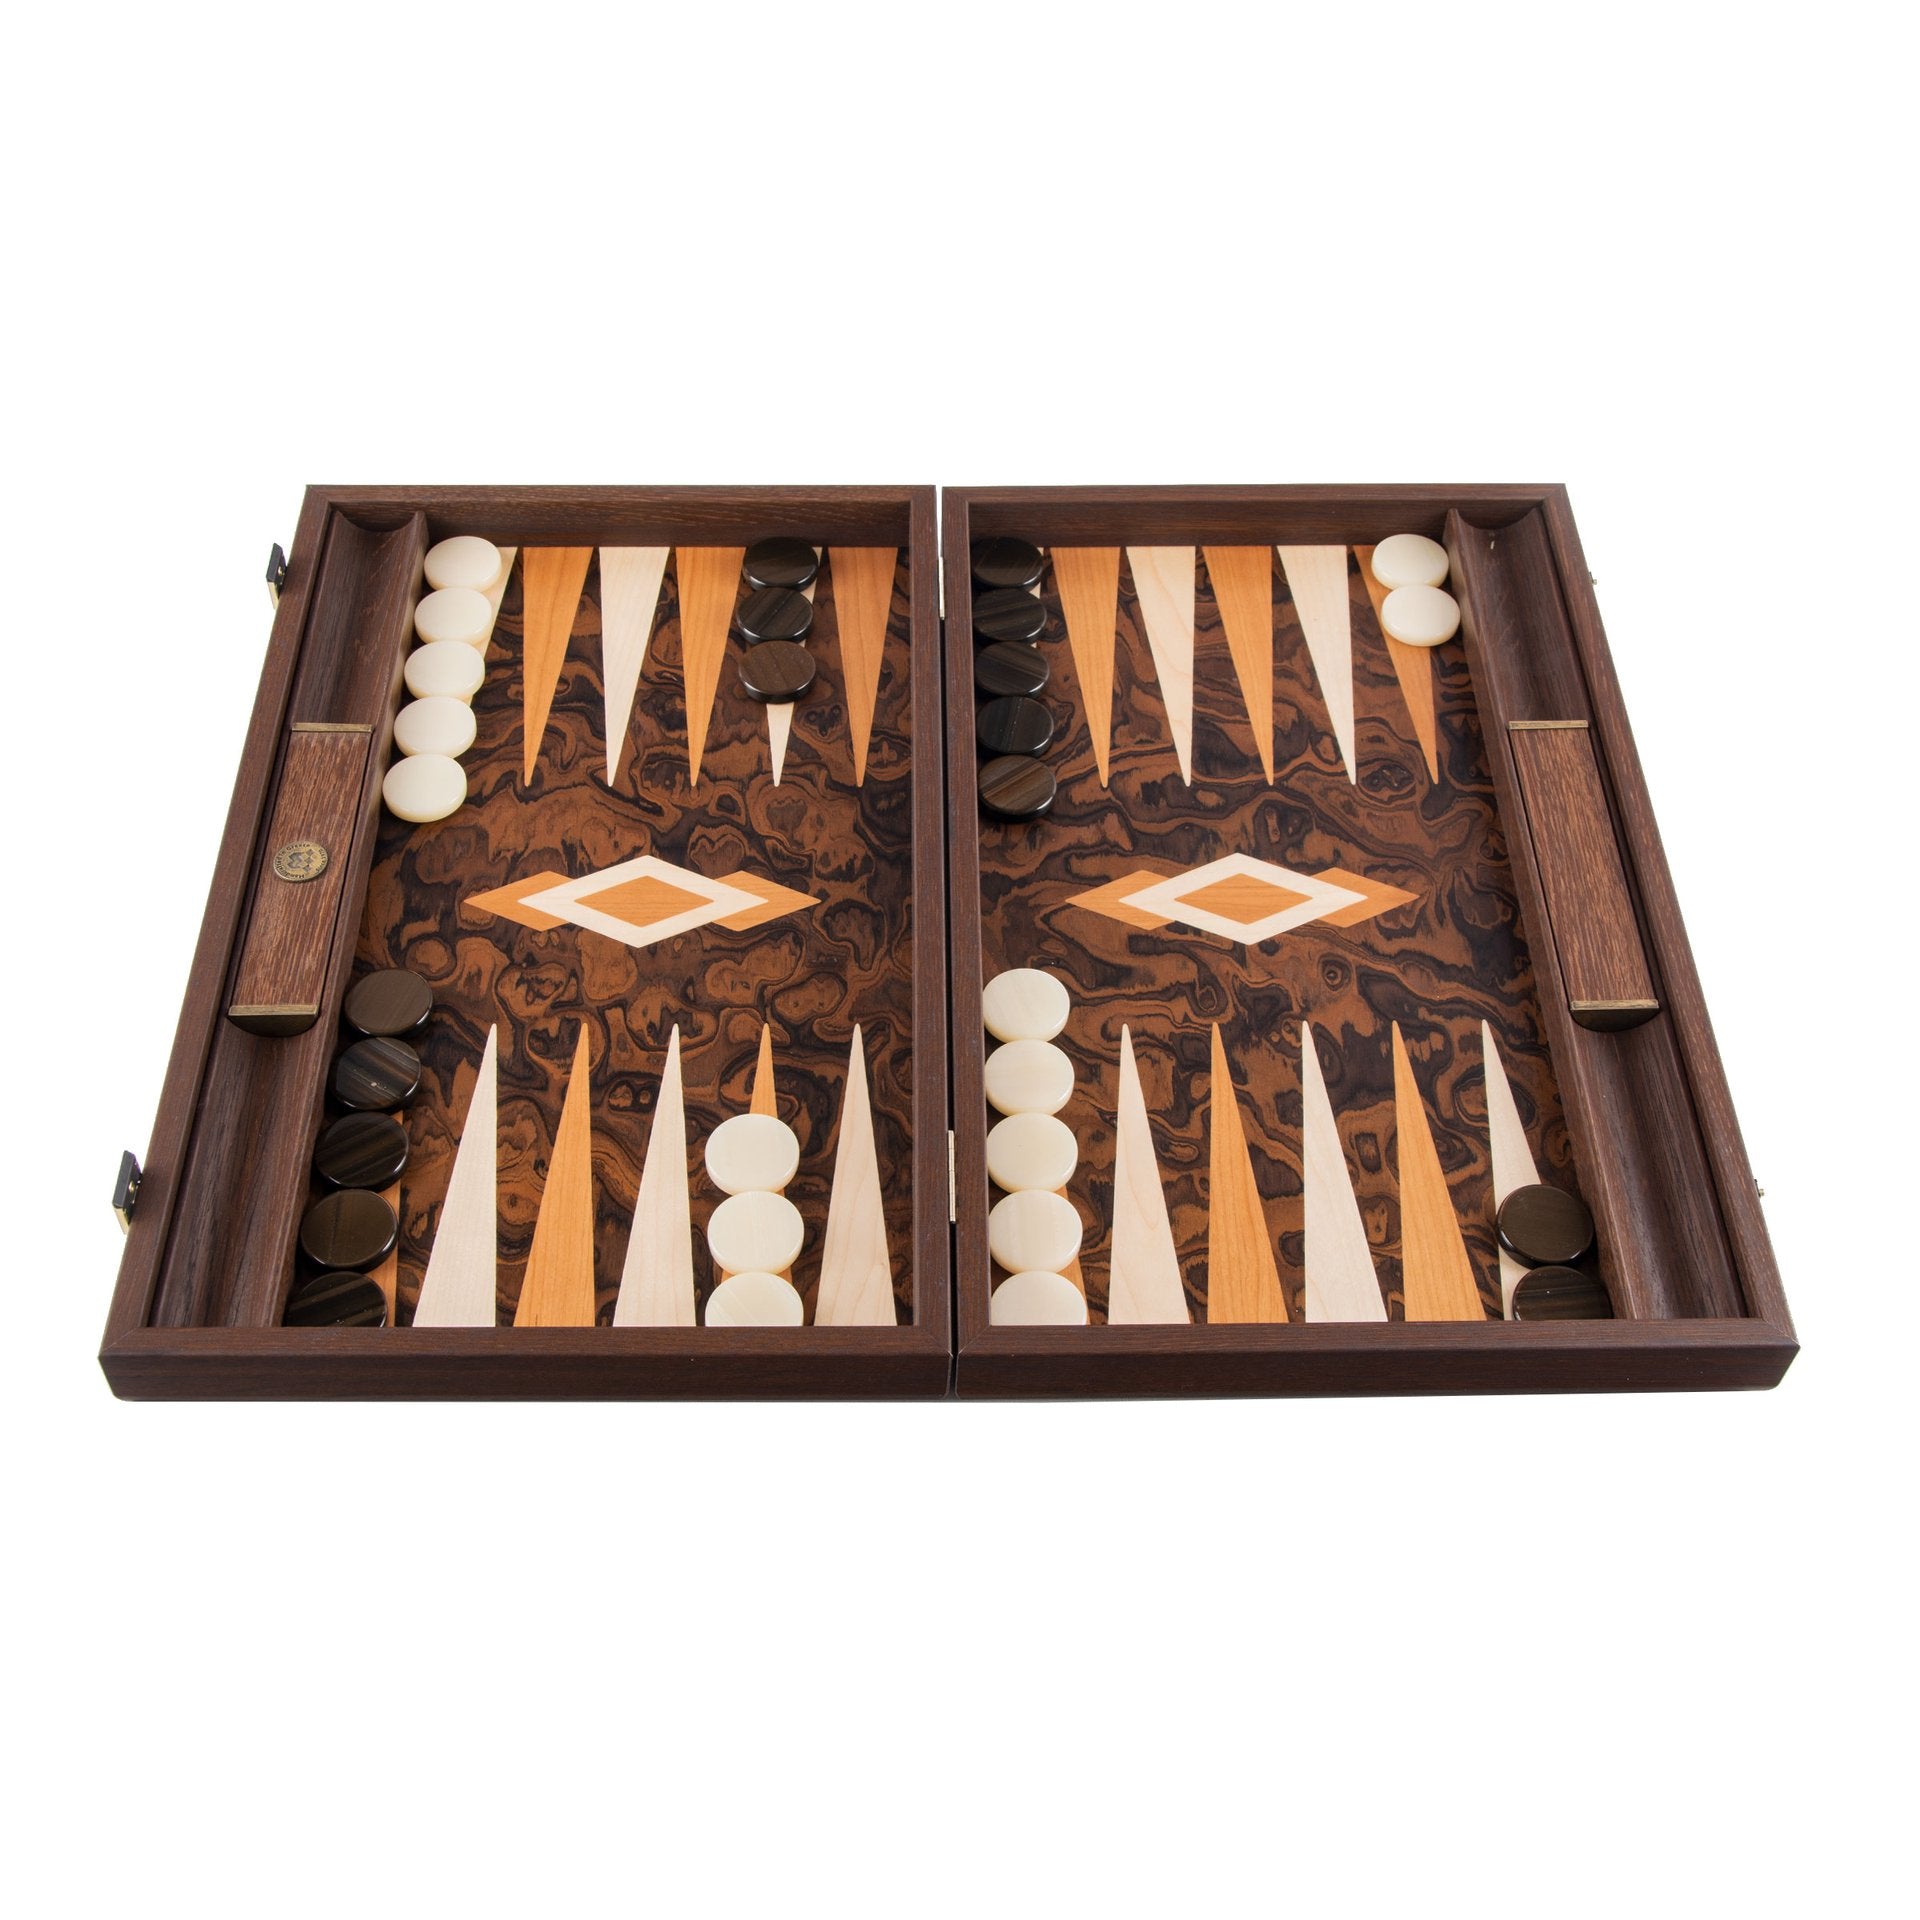 A wooden backgammon set